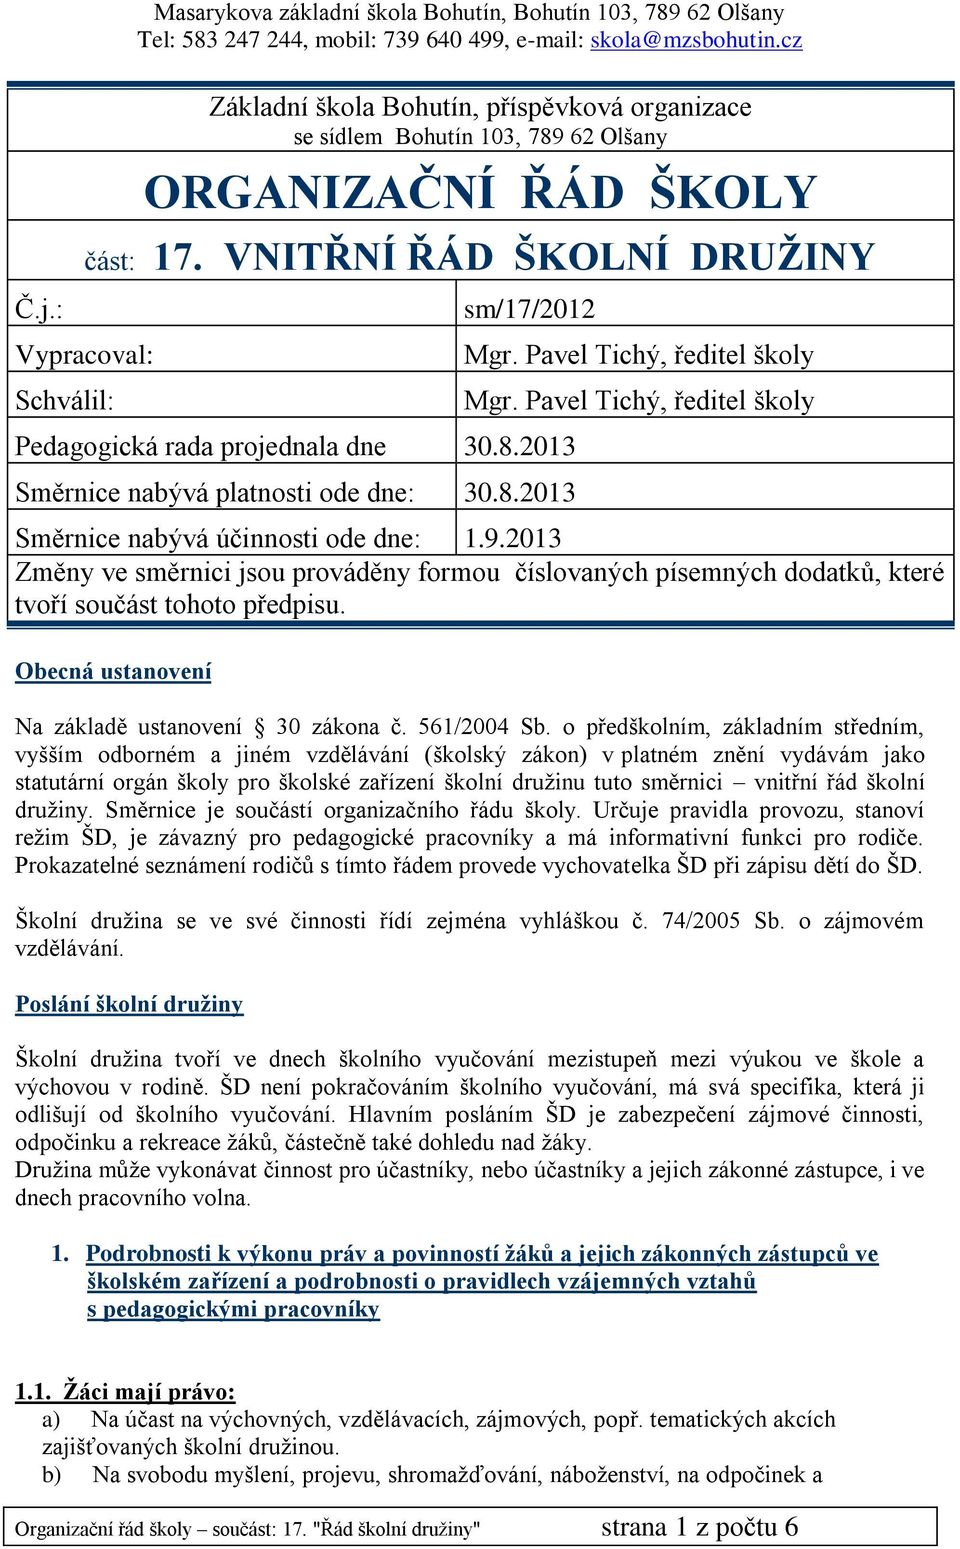 Pavel Tichý, ředitel školy Směrnice nabývá účinnosti ode dne: 1.9.2013 Změny ve směrnici jsou prováděny formou číslovaných písemných dodatků, které tvoří součást tohoto předpisu.